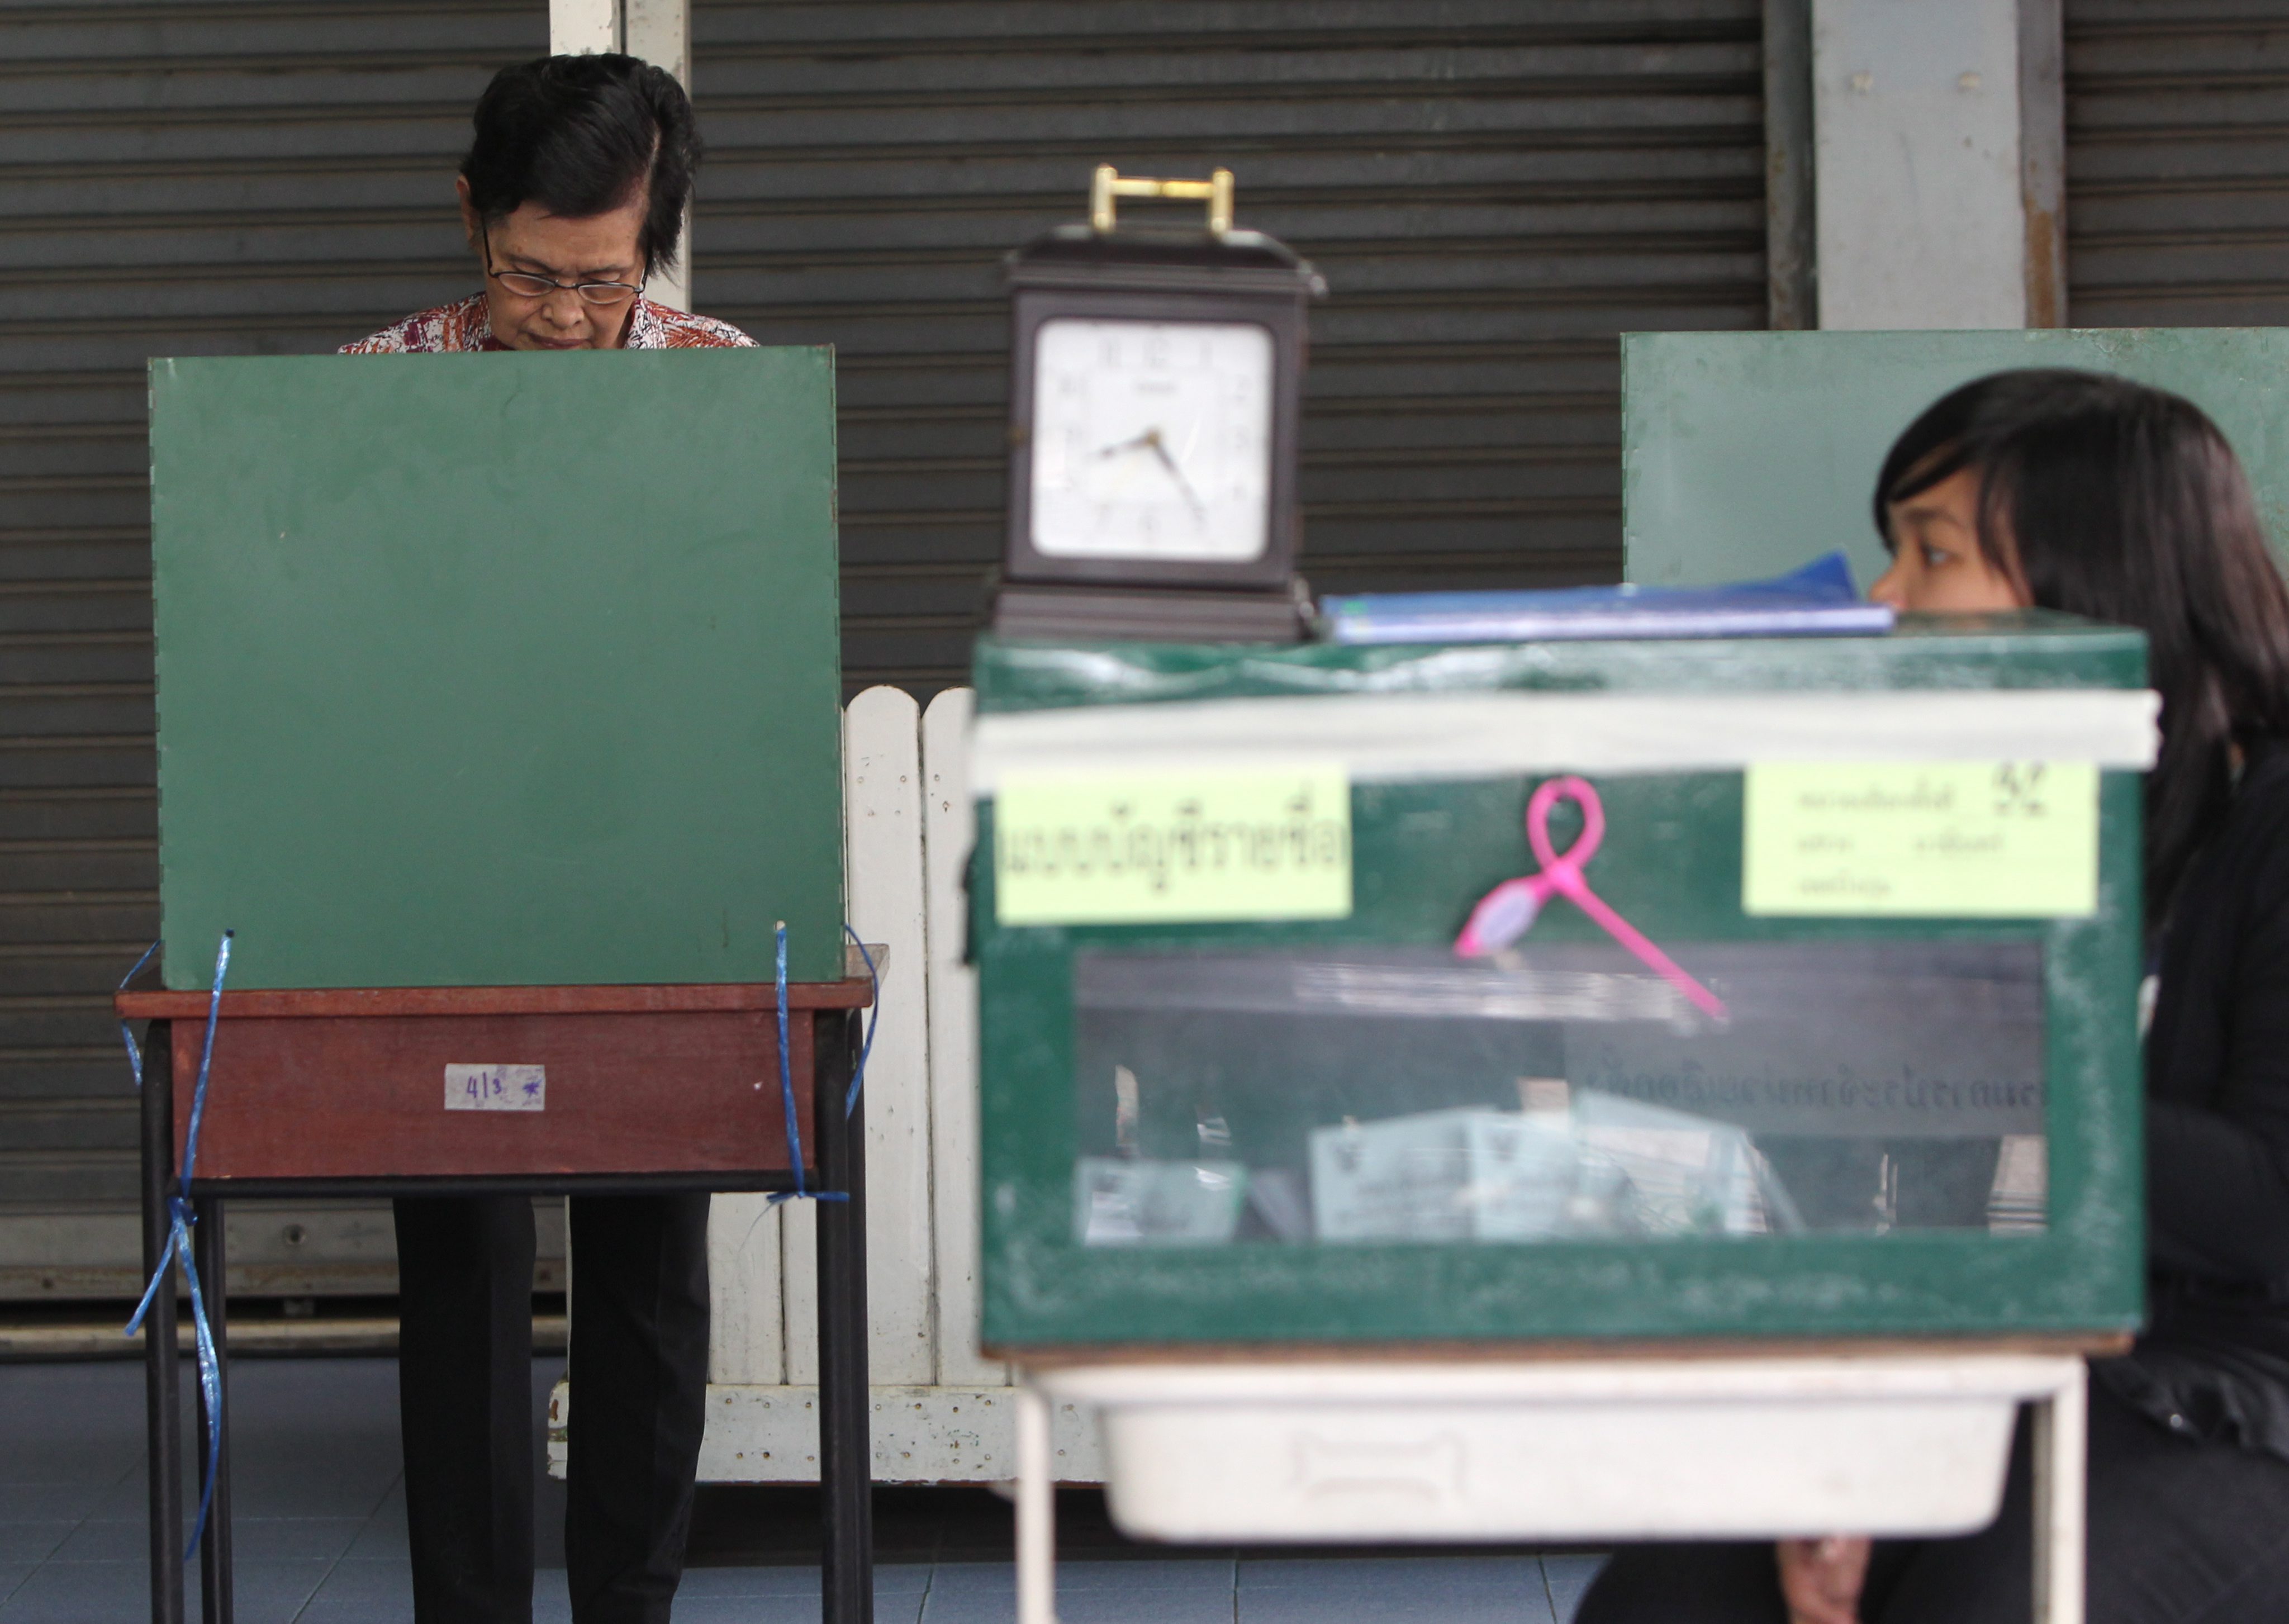 Ταϊλάνδη: Προηγείται η Σιναουάτρα – καταμετρημένο 49% των ψήφων